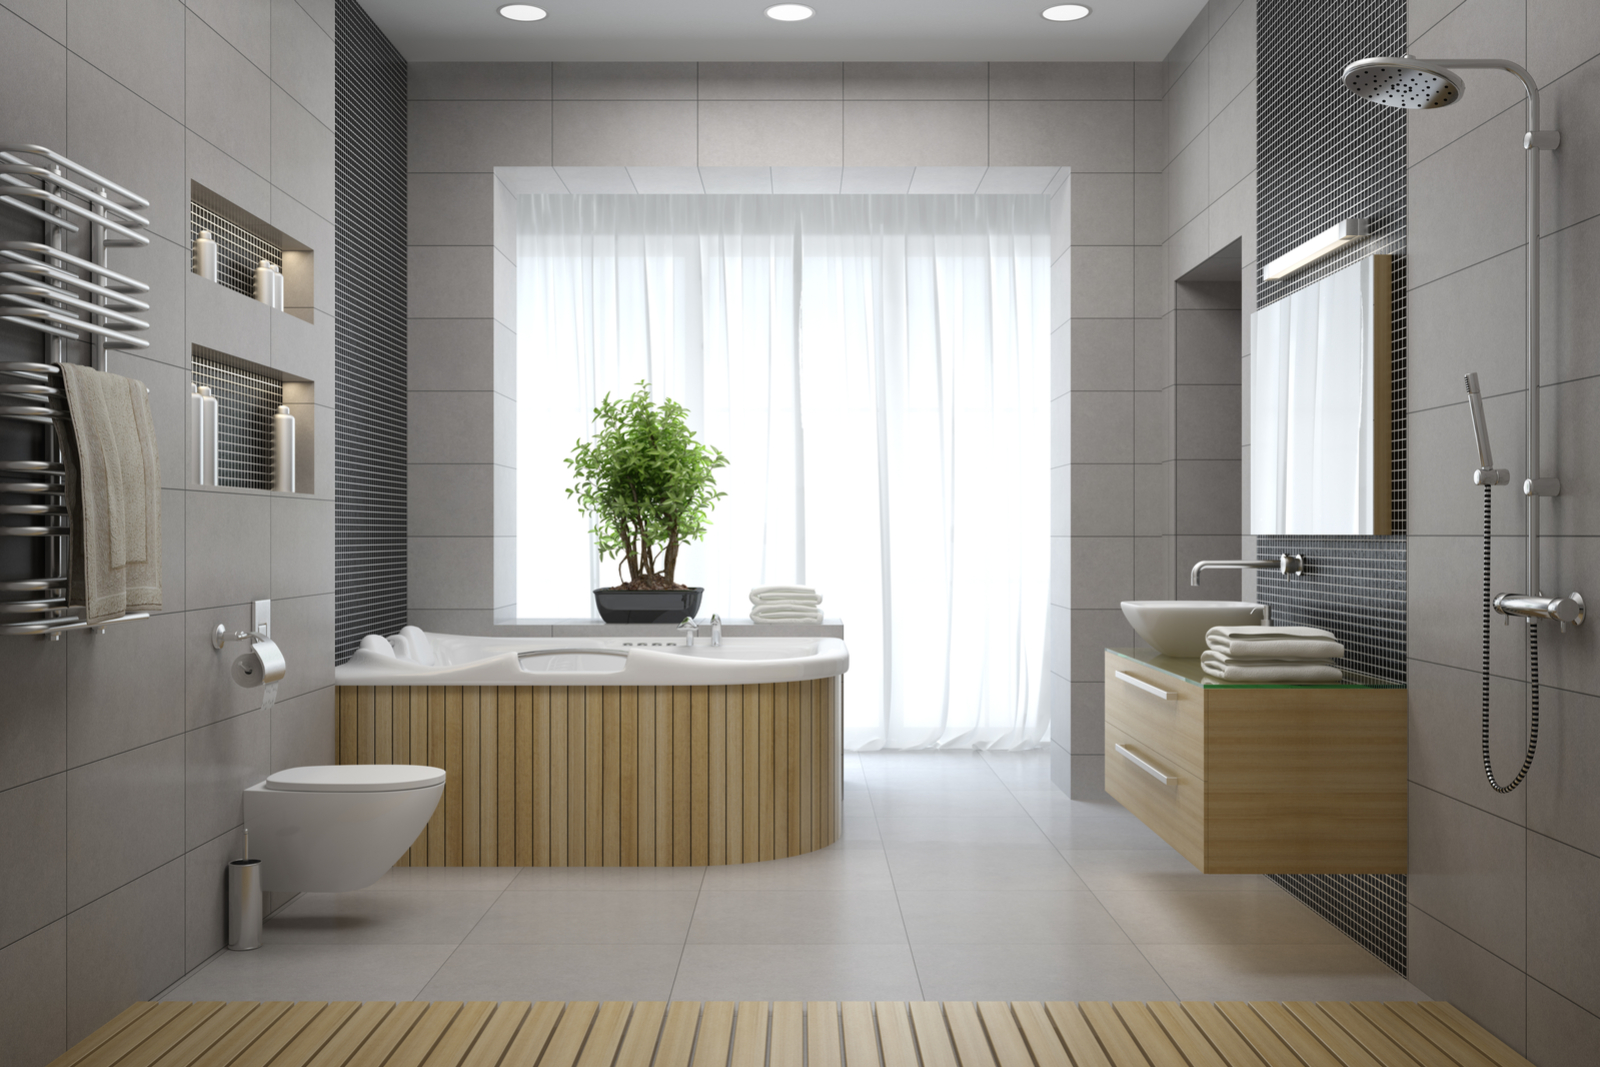 transforme seu banheiro em um lugar de relaxamento